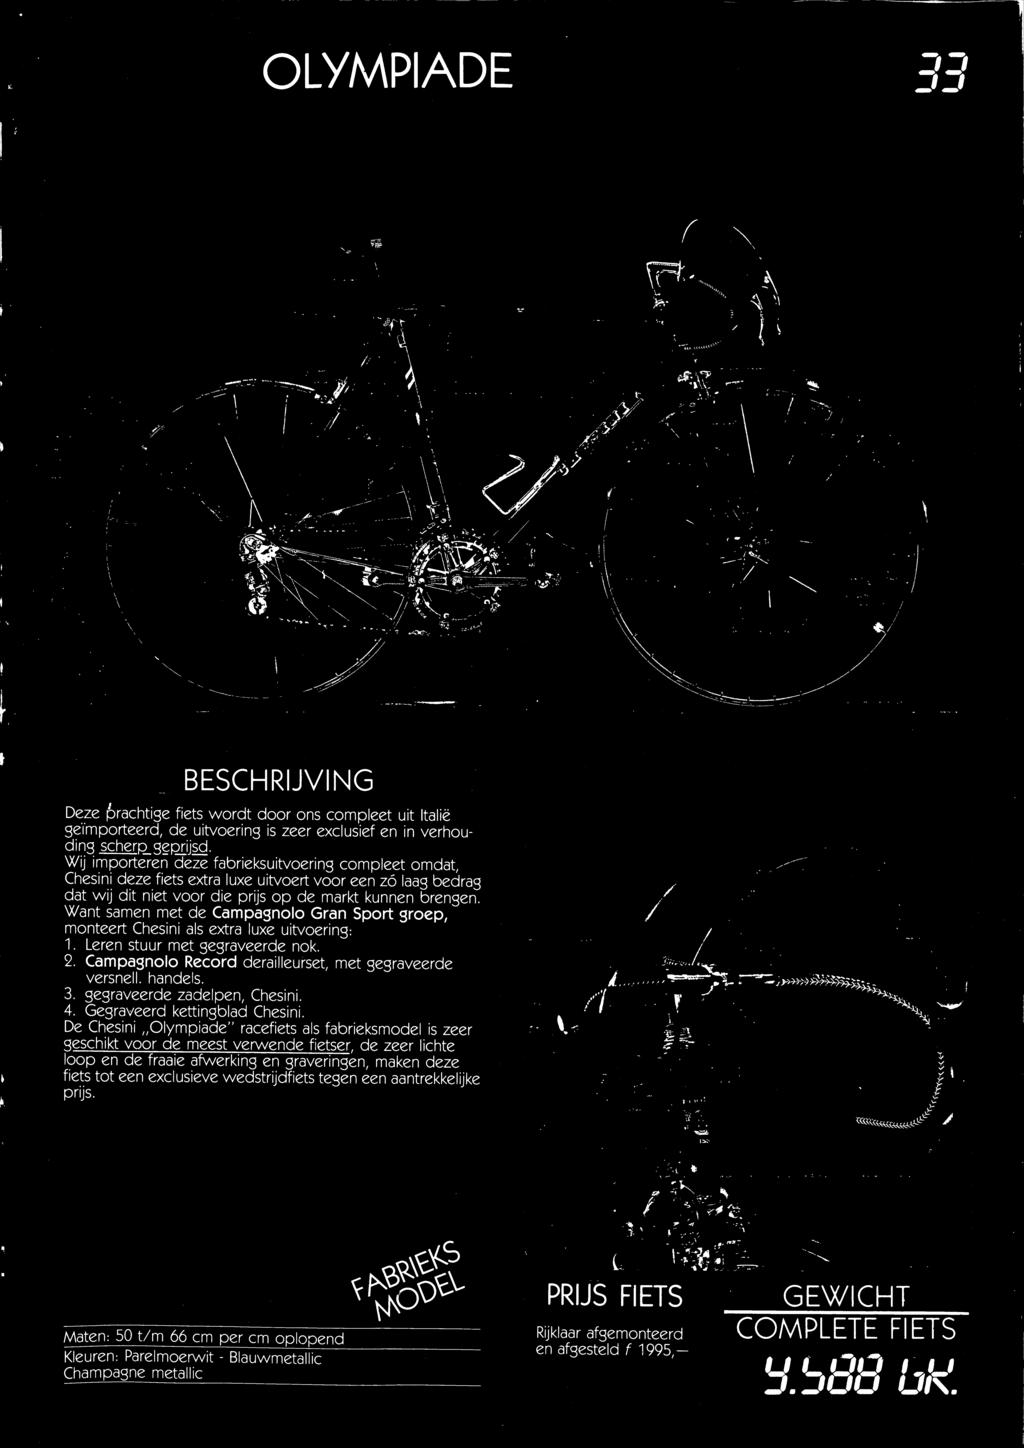 De Chesini Olympiade" racefiets als fabrieksmodel is zeer geschikt voor de meest verwende fietser, de zeer lichte loop en de fraaie afwerking en graveringen,